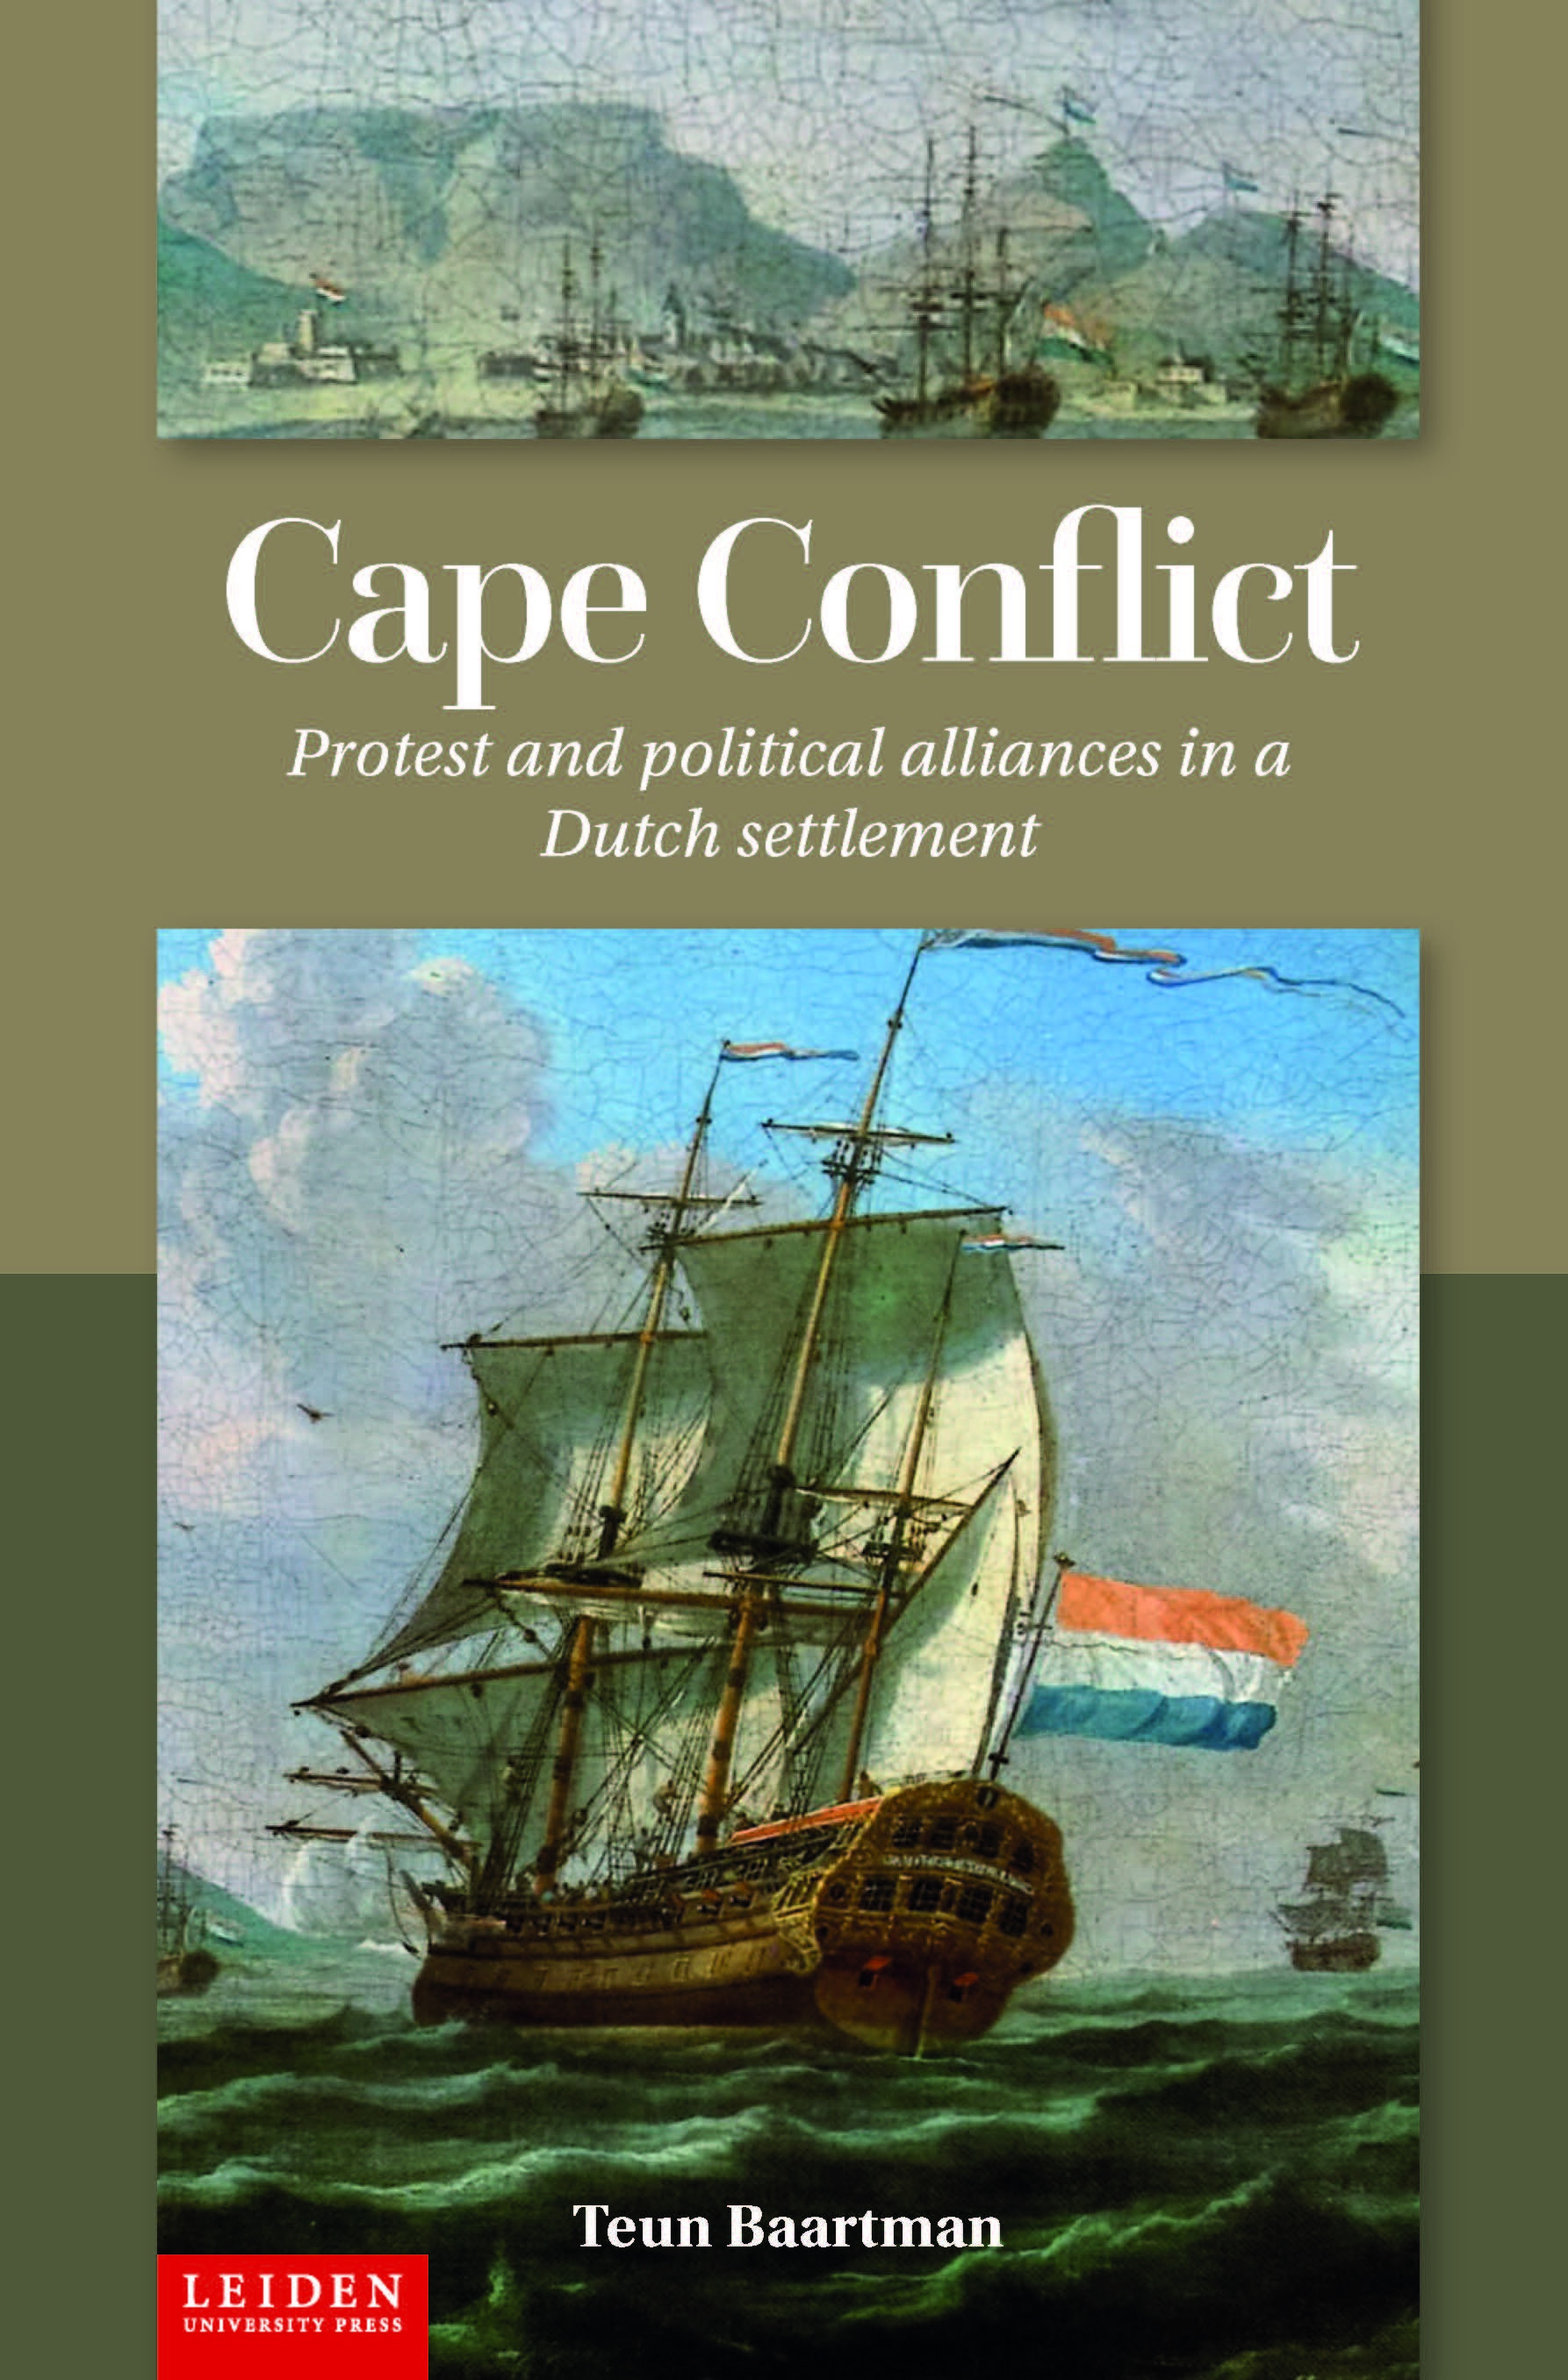 Cape Conflict cover chosen Leiden UP